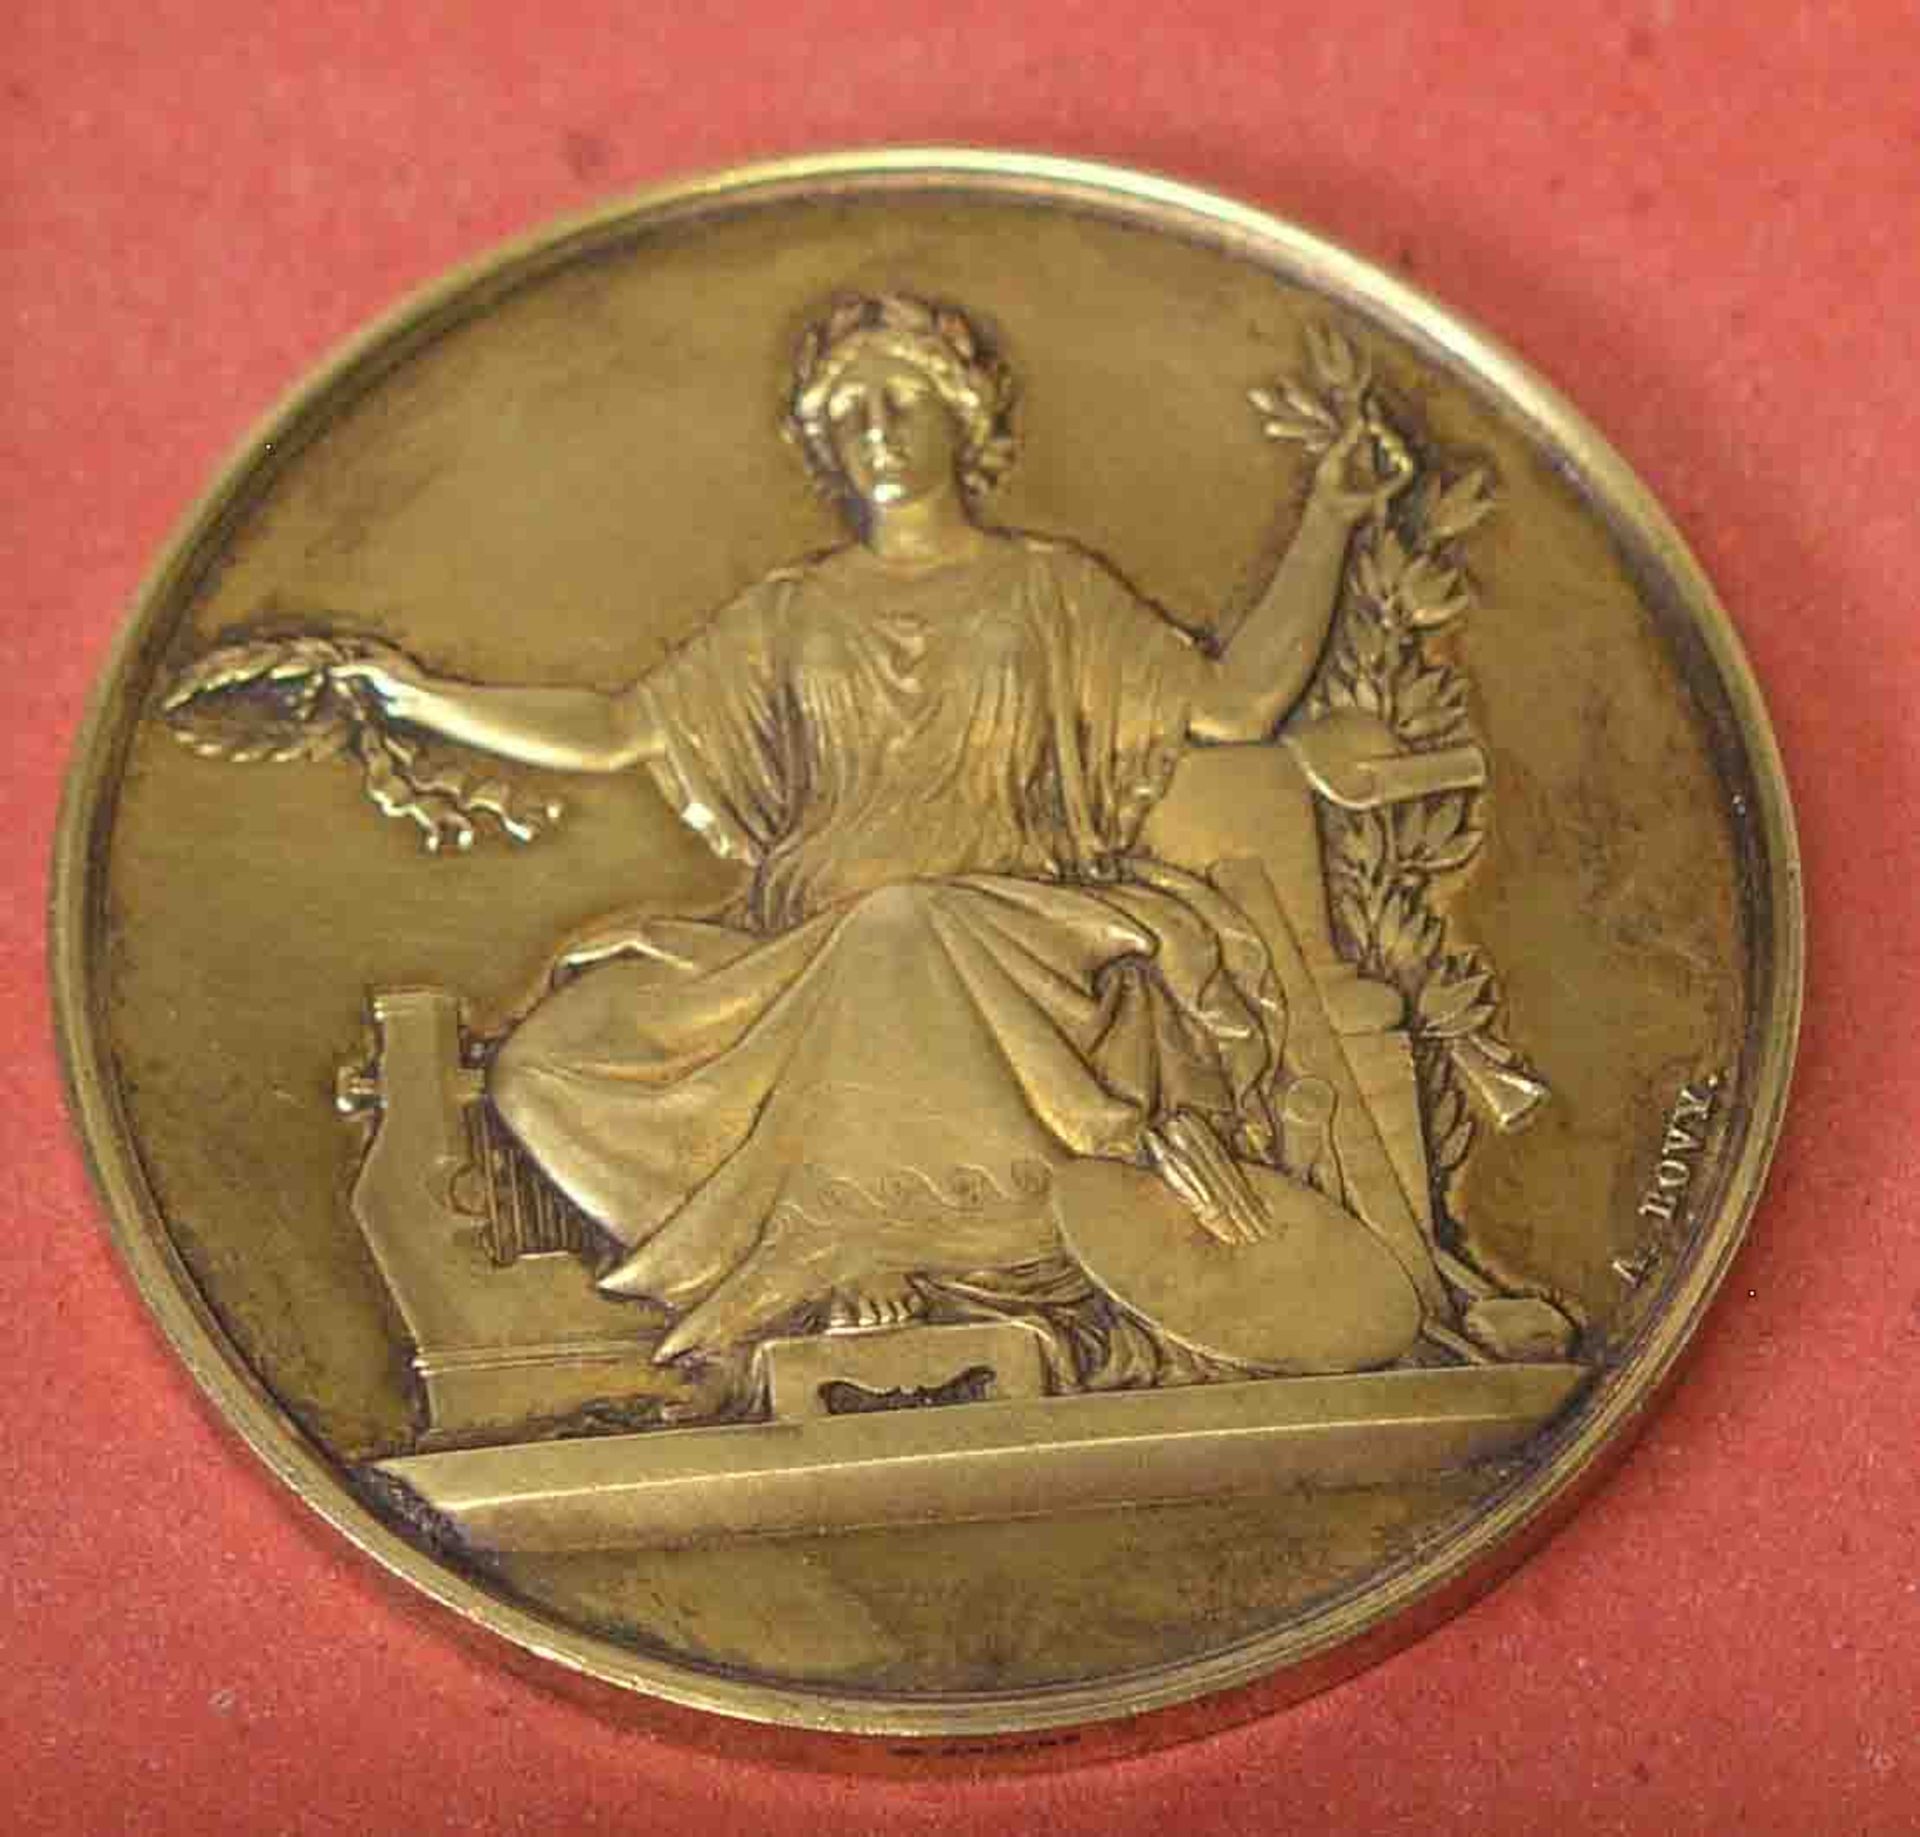 Medaille, Silber, Frankreich, 1867. "Societé Francaise de Neumismatique et Archeologie".